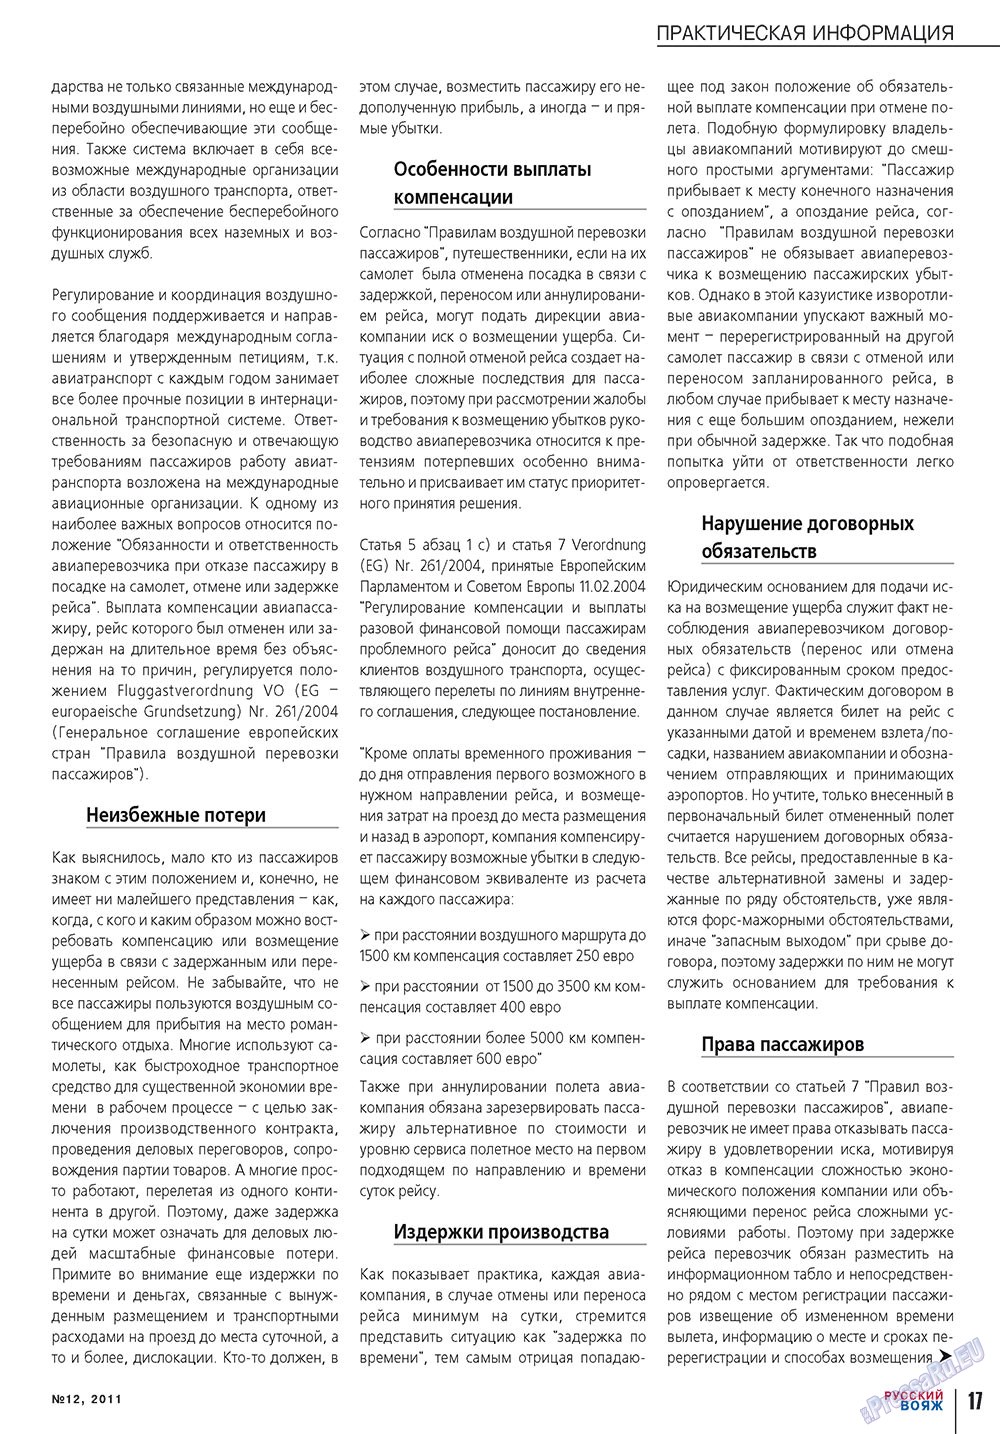 Русский вояж, журнал. 2011 №12 стр.17